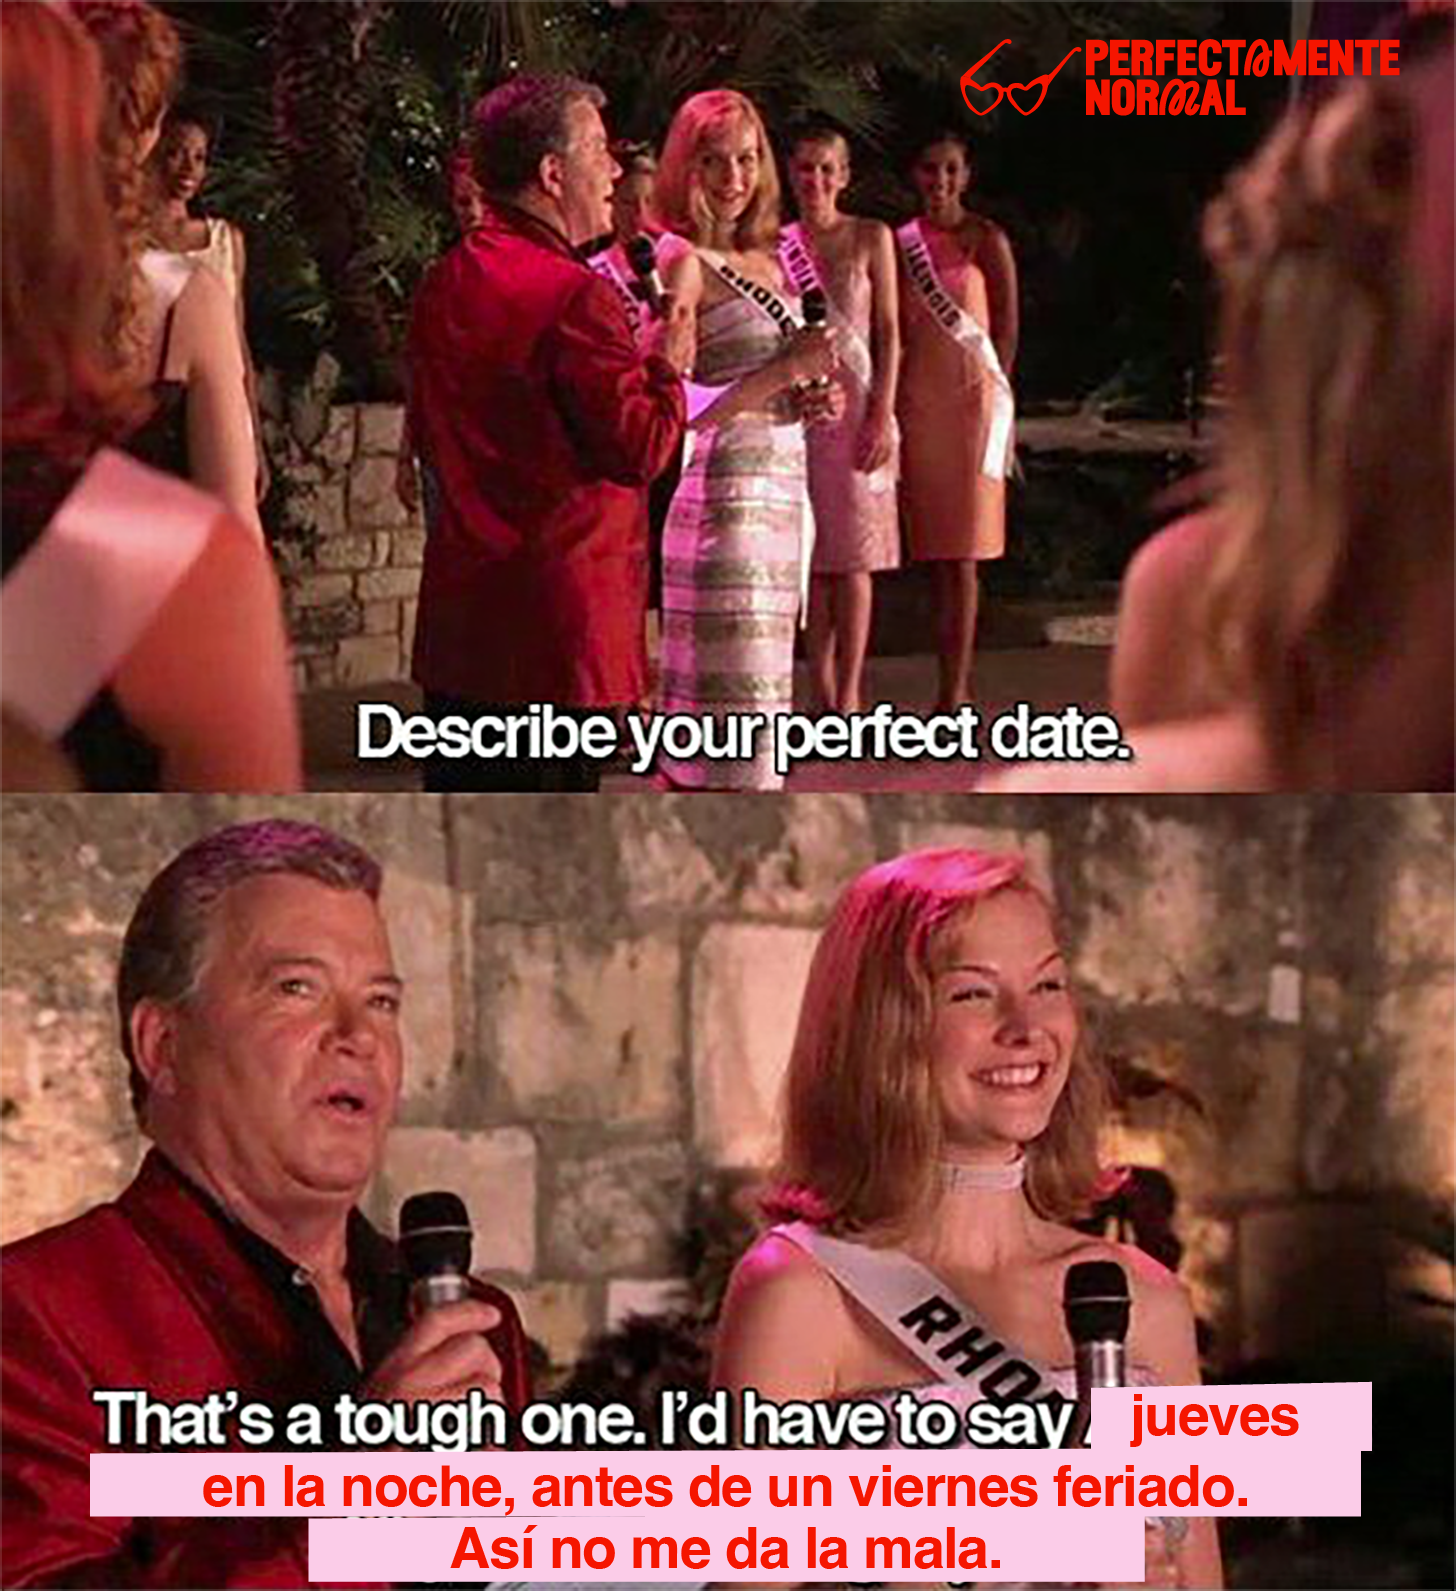 Describe your perfect date. "That's a tough one. I'd have to say jueves en la noche, antes de un viernes feriado. Así no me da la mala."